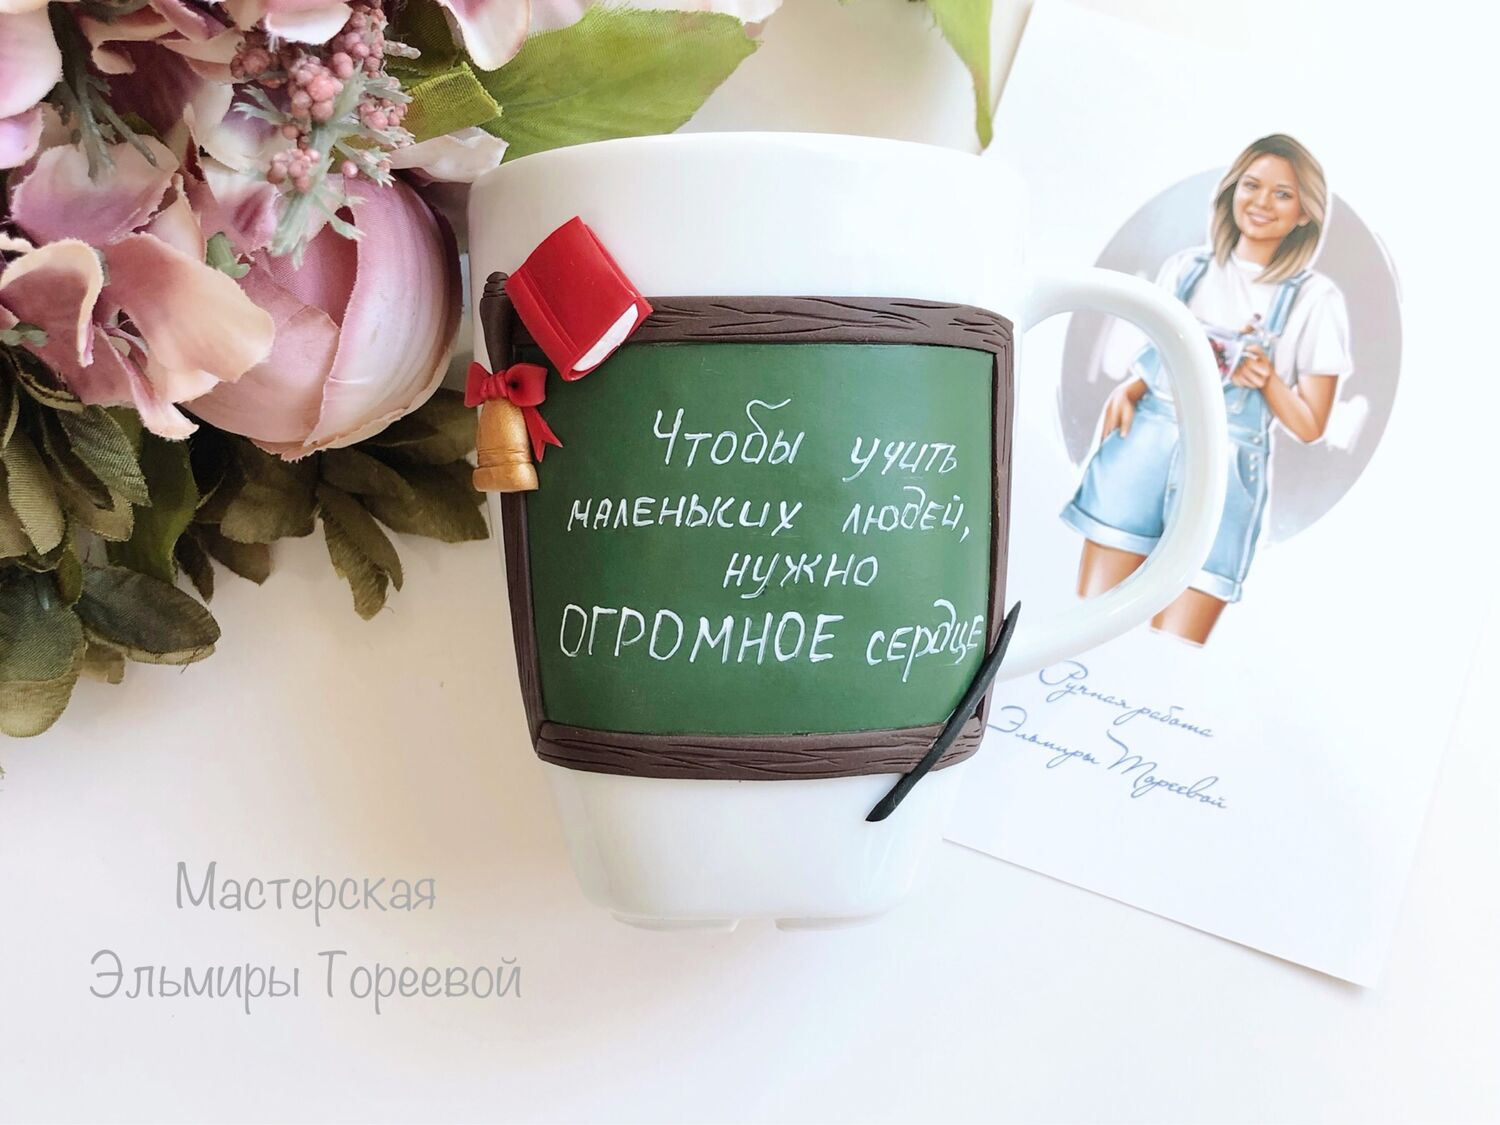 ТОП интересный идей подарков для учителя года — Новости Коломны на kormstroytorg.ru